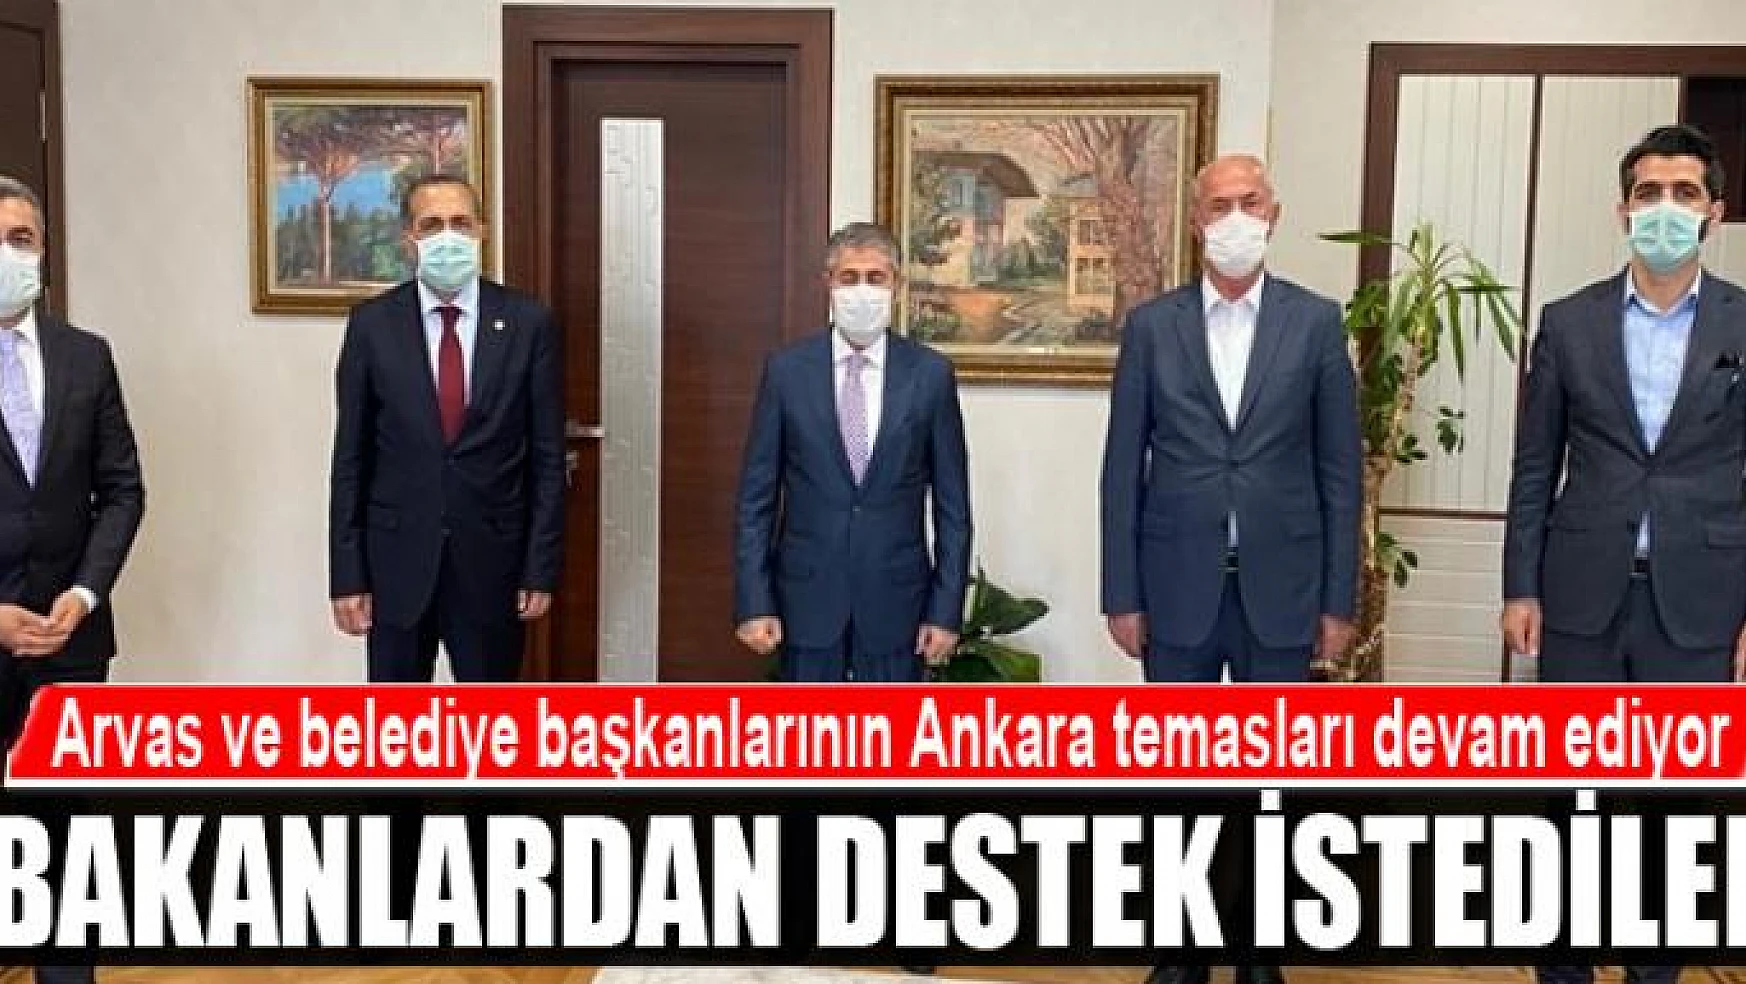 Arvas ve belediye başkanlarının Ankara temasları devam ediyor